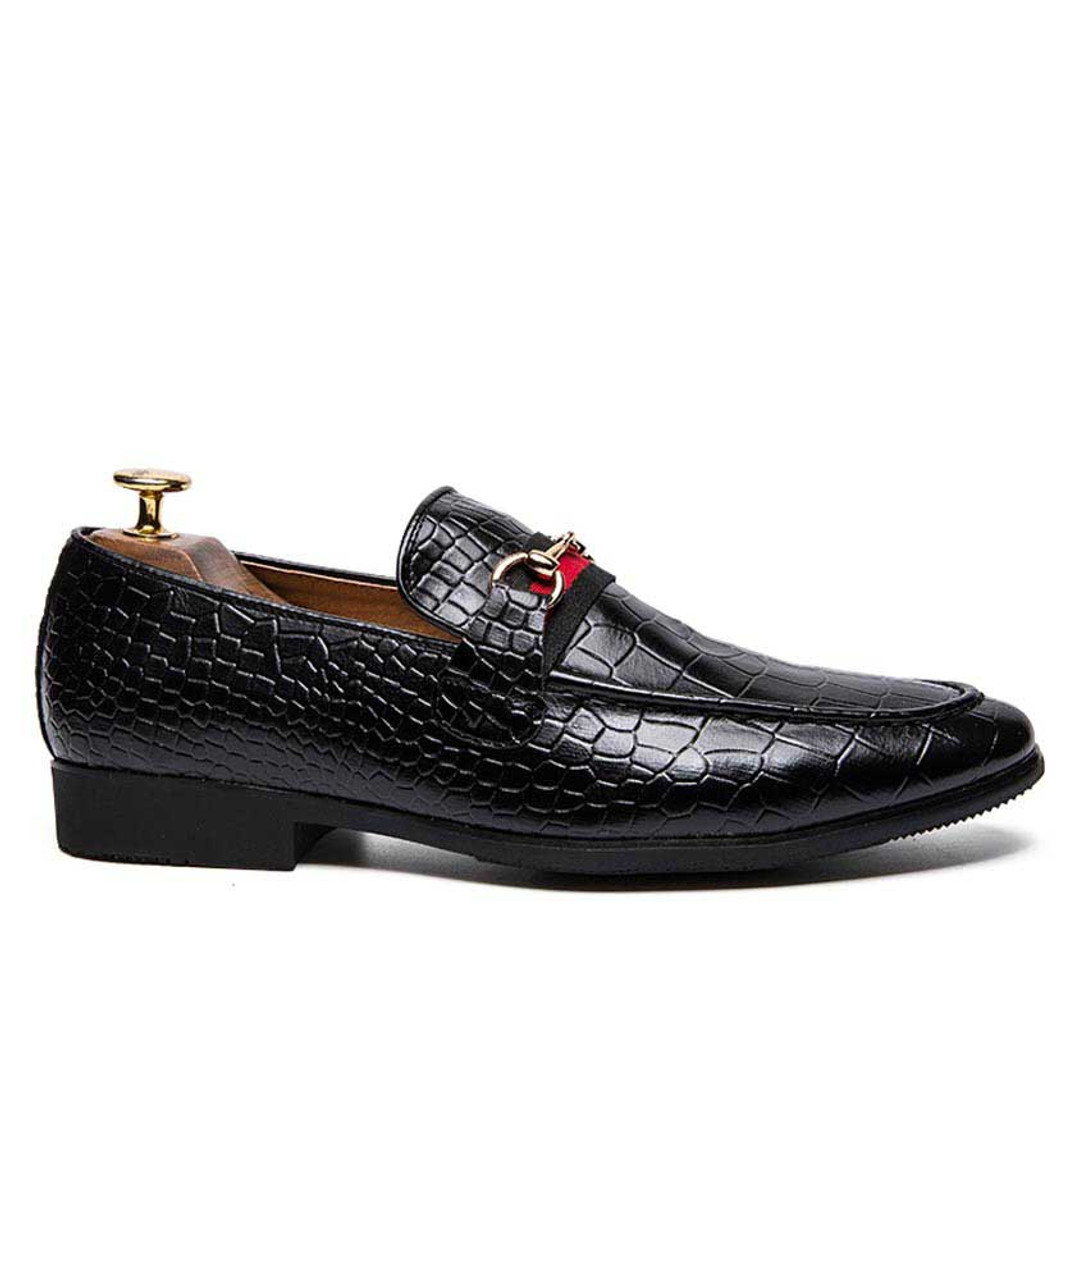 Black croc pattern buckle on stripe slip on dress shoe | Mens dress ...